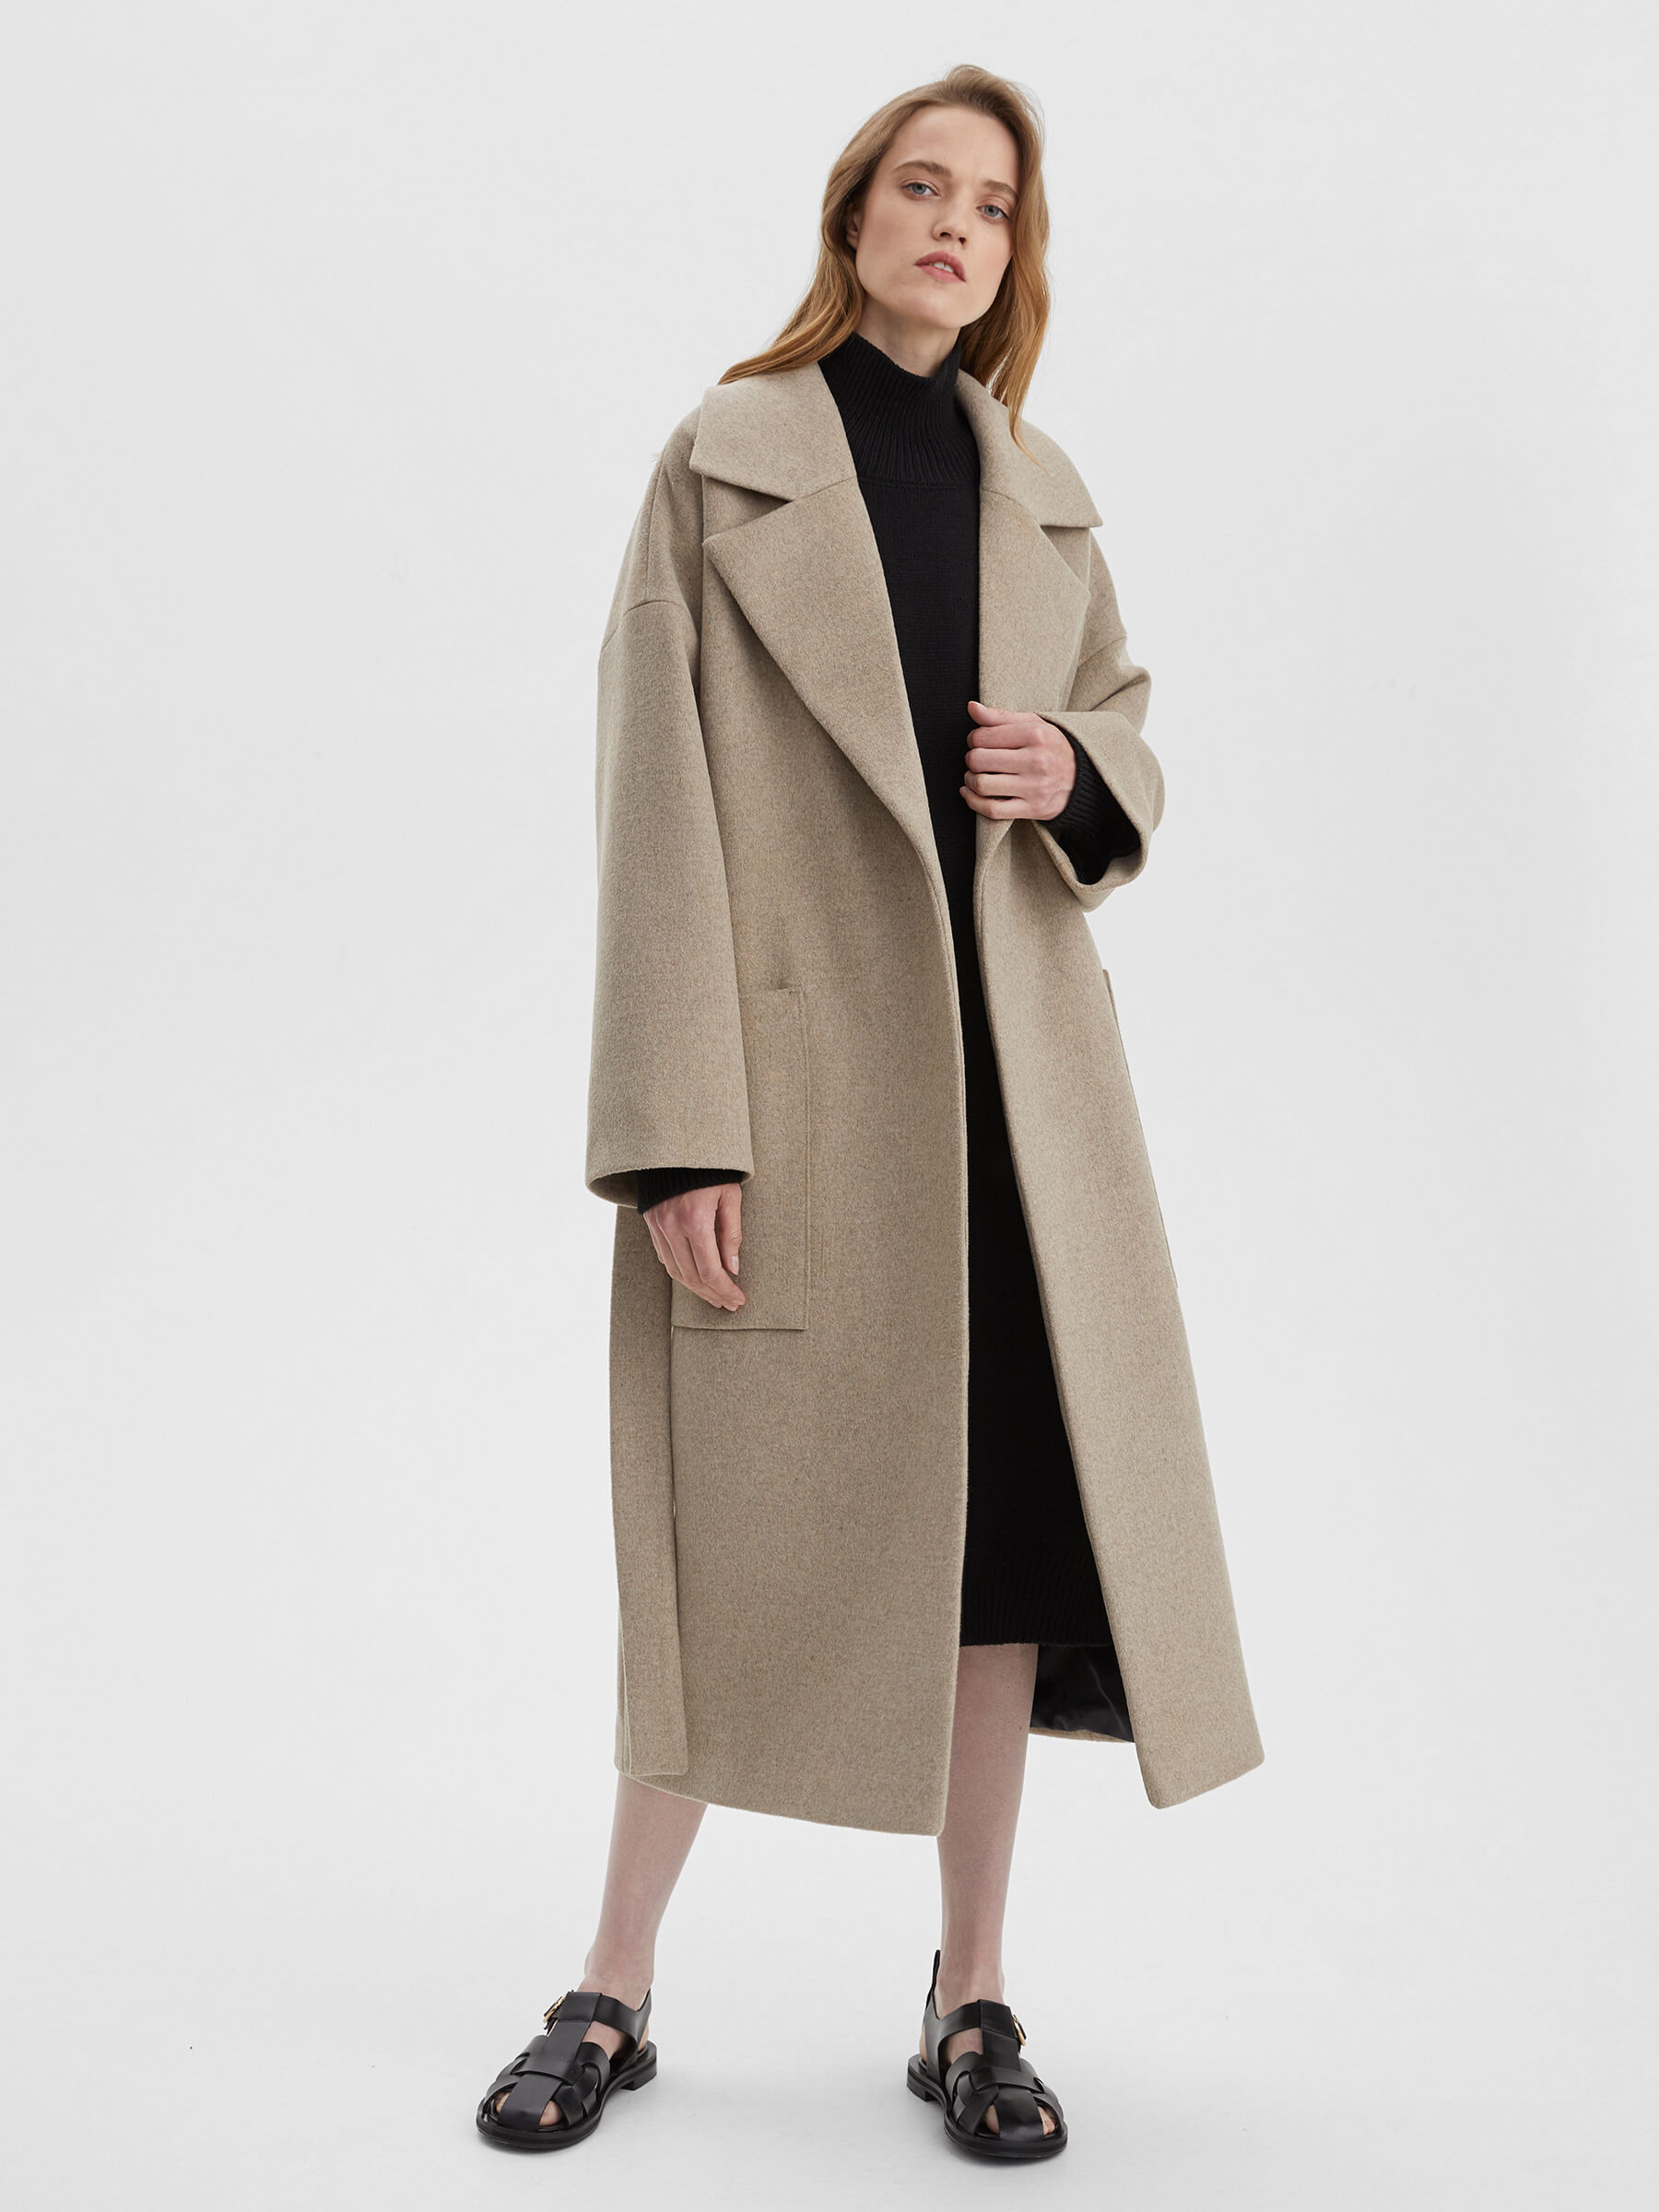 женское хлопковое пальто с большим меховым воротником свободного покроя средней длины m289 Пальто женское длинное с объемными карманами и поясом, цвет – молочный